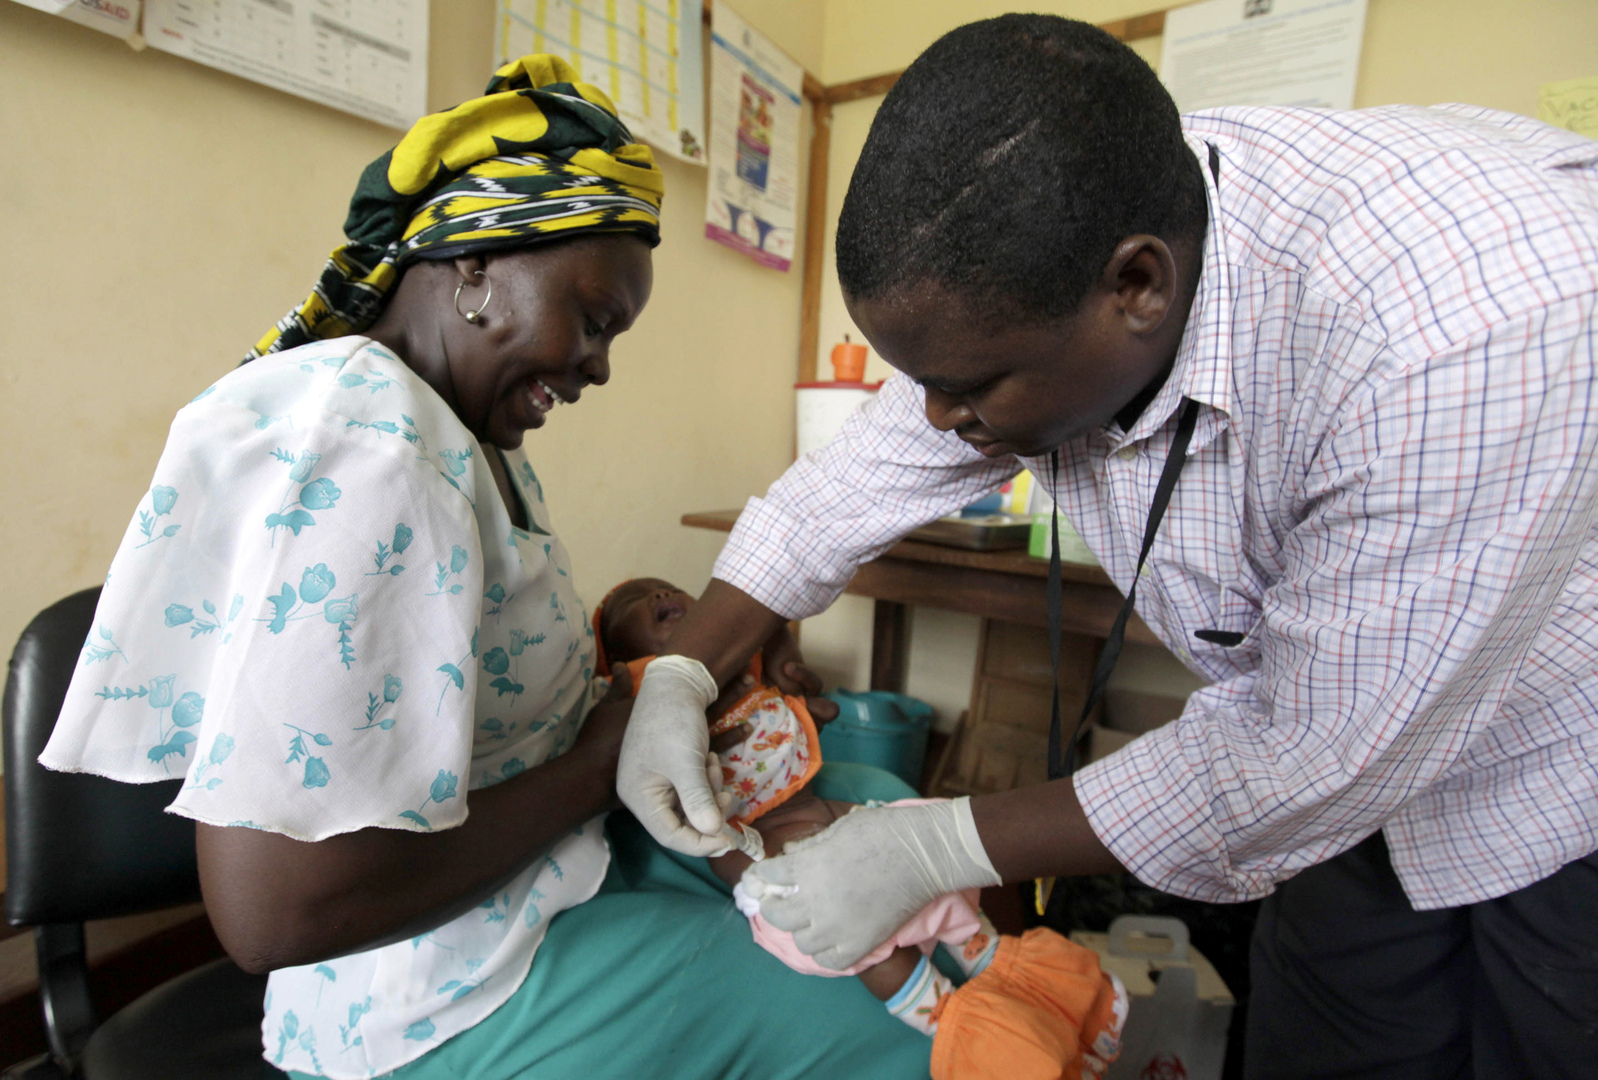 تطعيم طفل إفريقي بلقاح تجريبي ضد الملاريا (أرشيف)